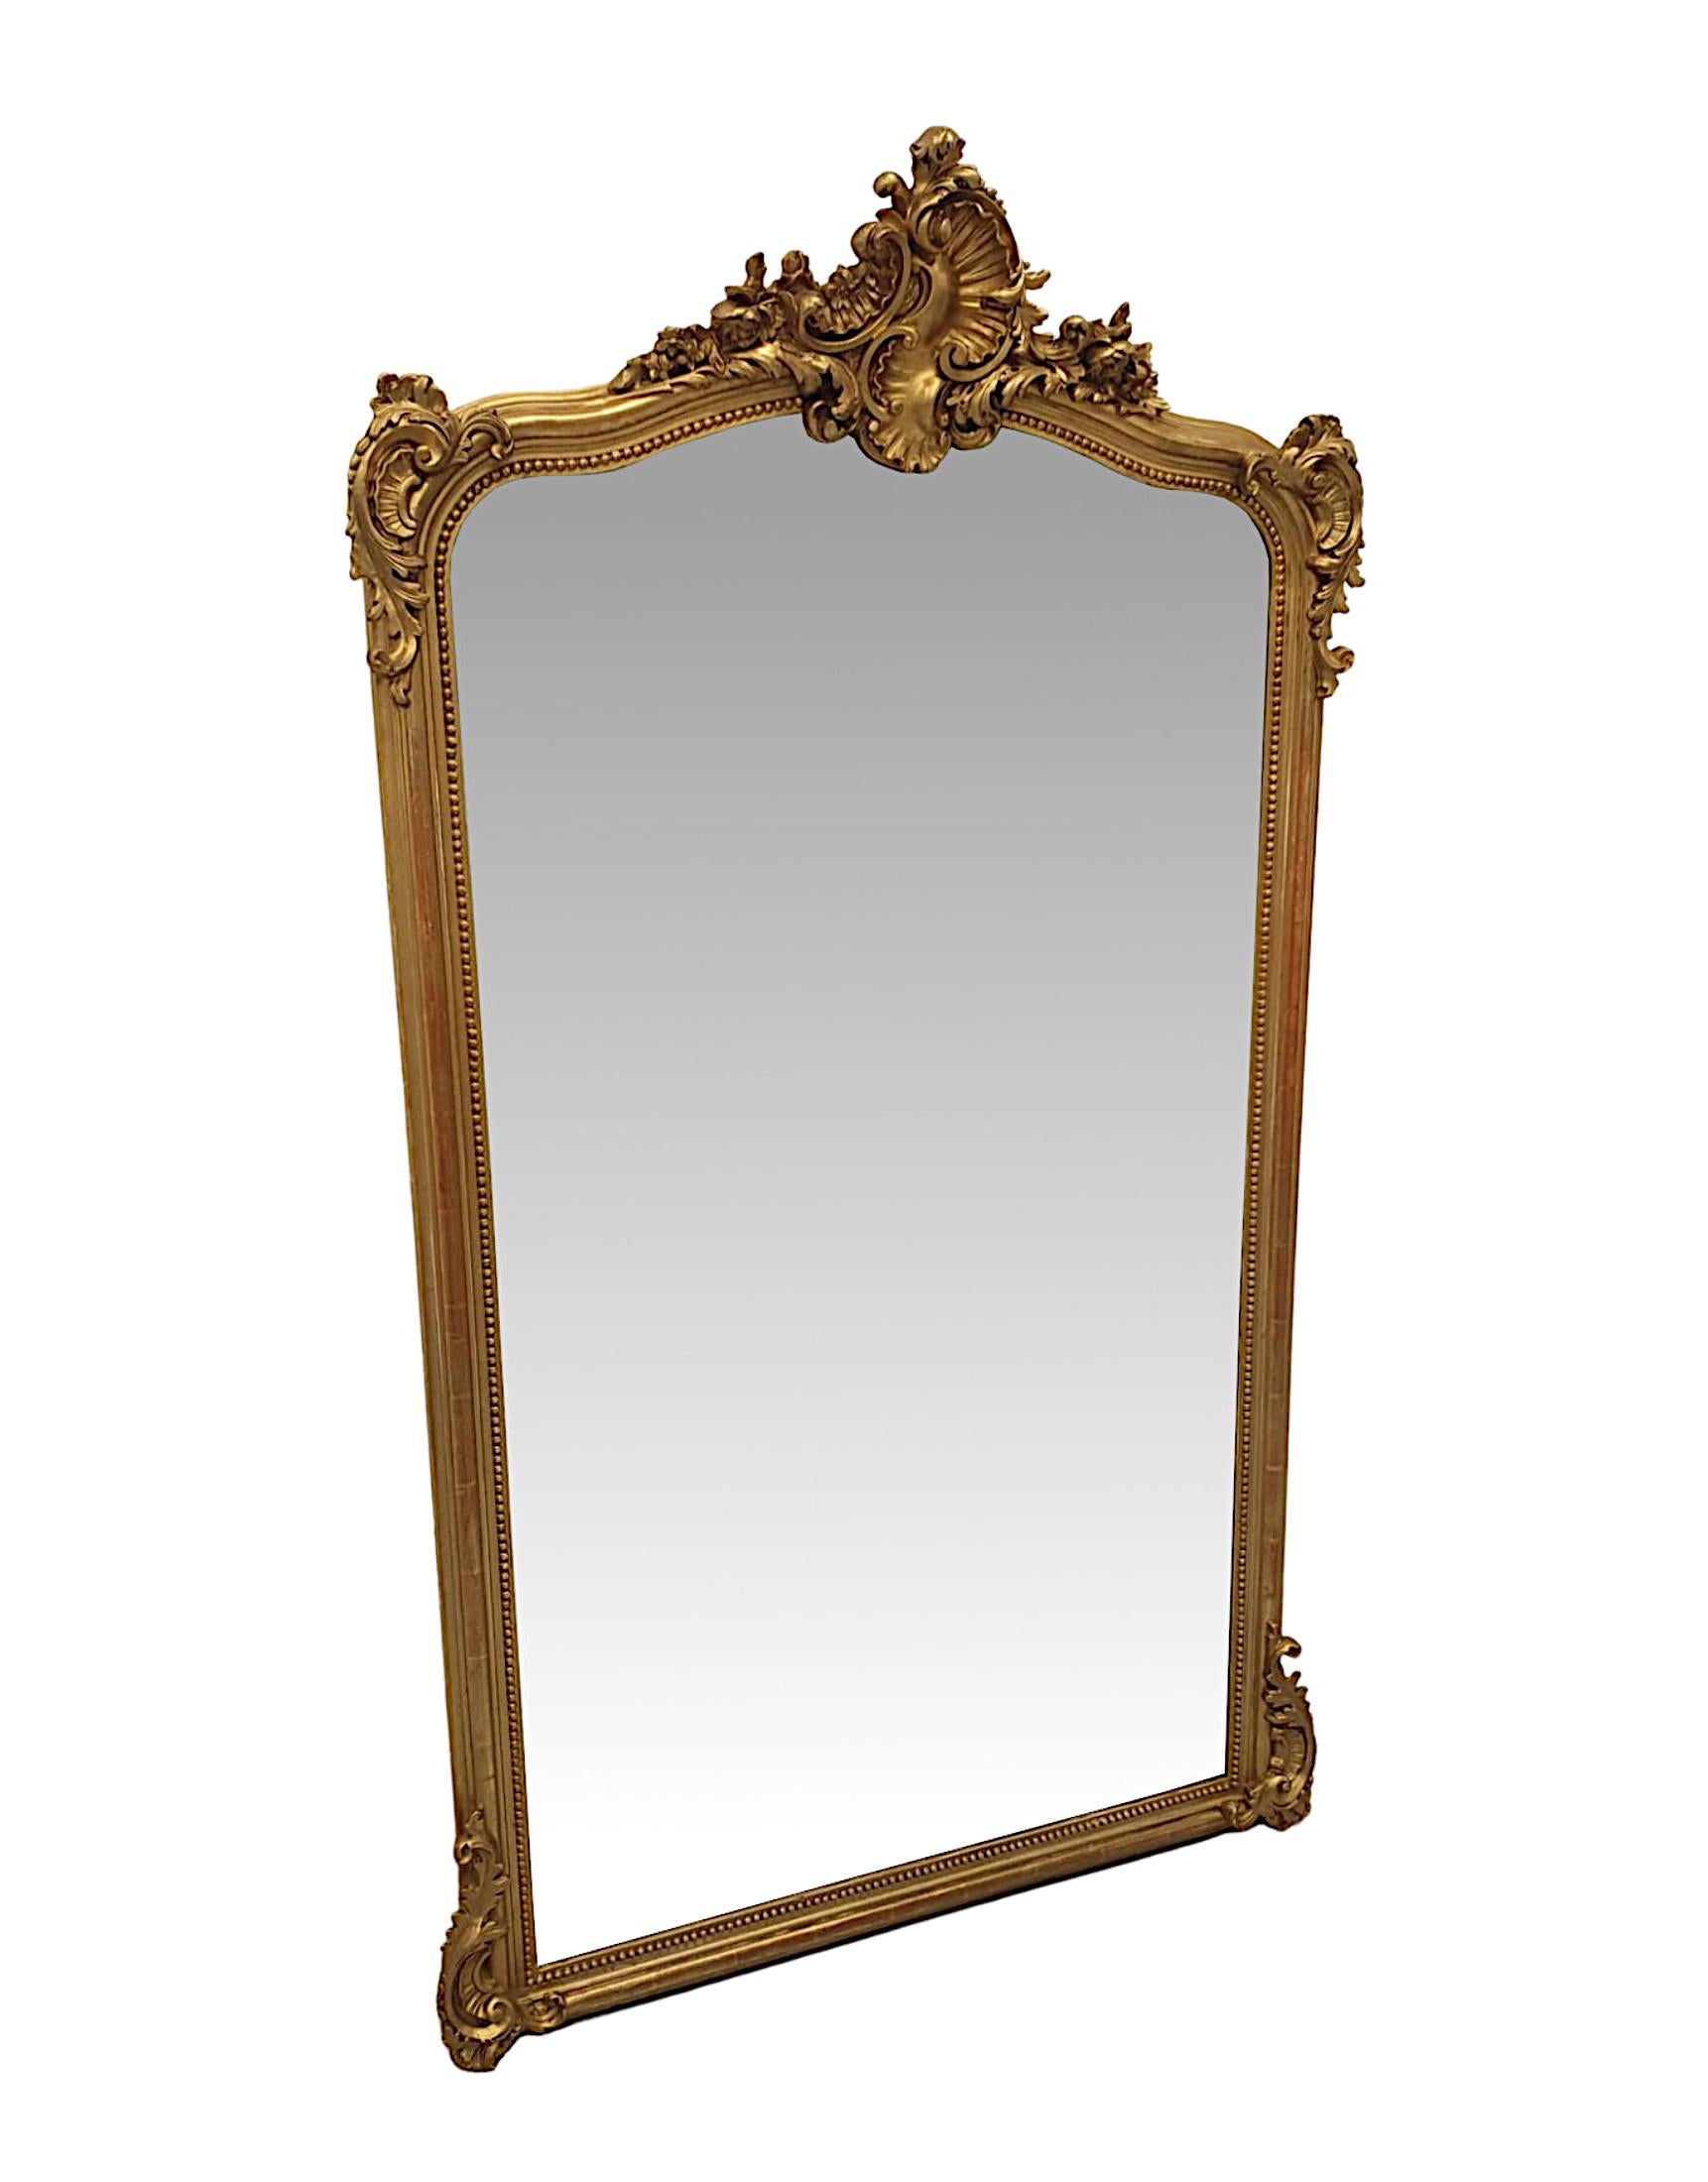 Miroir d'entrée en bois doré du XIXe siècle. La plaque de miroir biseautée d'origine, de forme rectangulaire, est placée dans un magnifique cadre en bois doré sculpté et moulé à la main avec une bordure perlée. Surmonté d'une élégante composition